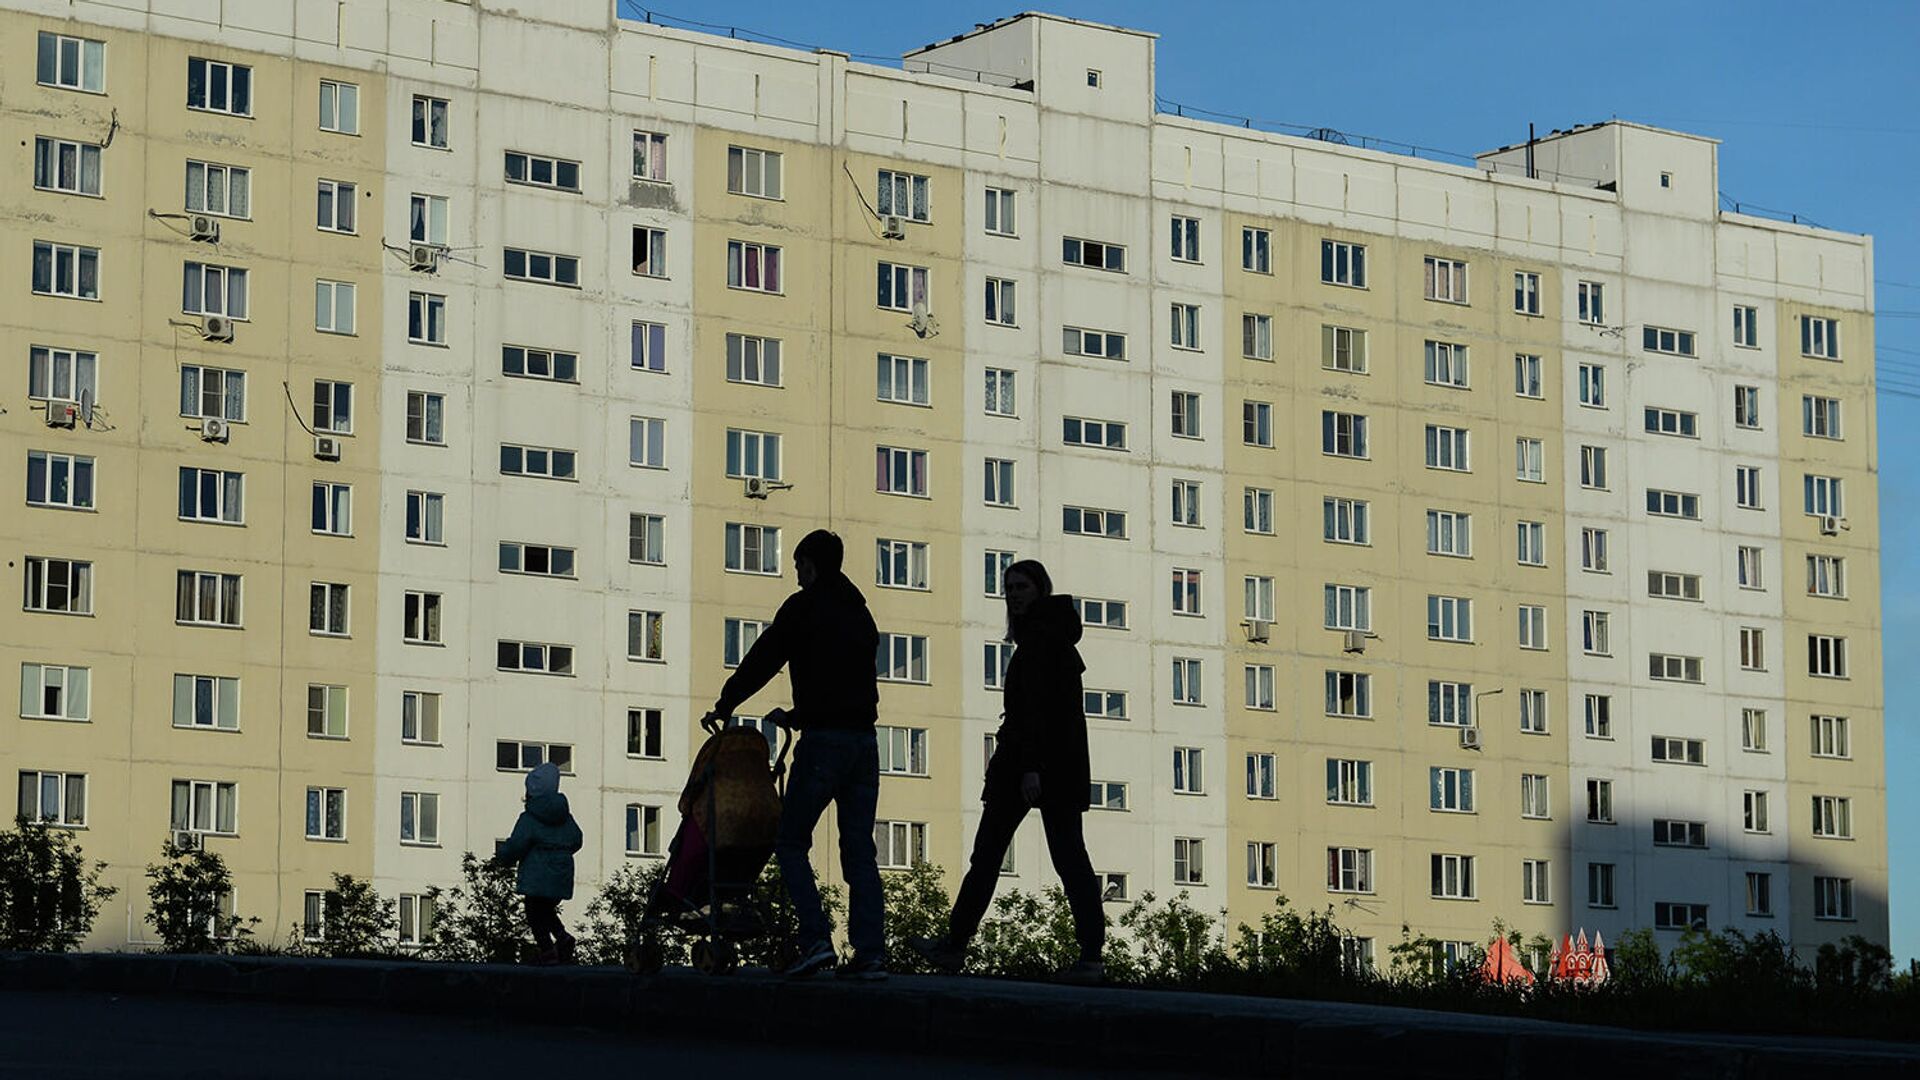 Семья на прогулке во дворе жилого дома - РИА Новости, 1920, 25.11.2020